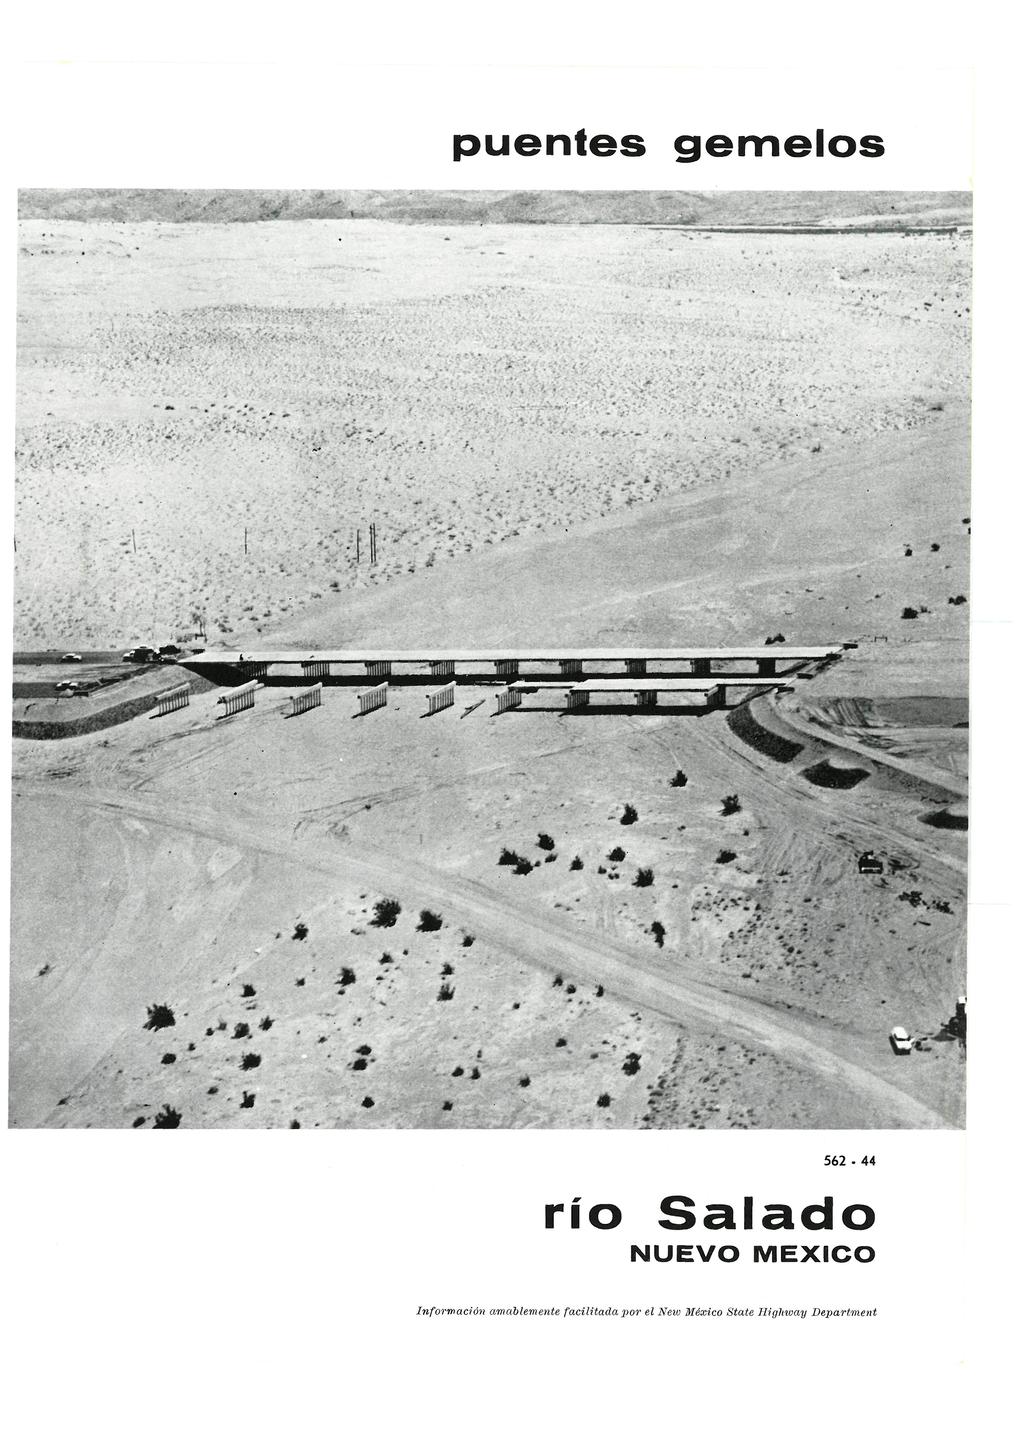 Informes de la Construcción Vol. 12, nº 110 Abril de 1959 puentes g e m e l o s mmt fi'ñíkii'c^' ;< =?.-é.-^' ^' r: j l í i.